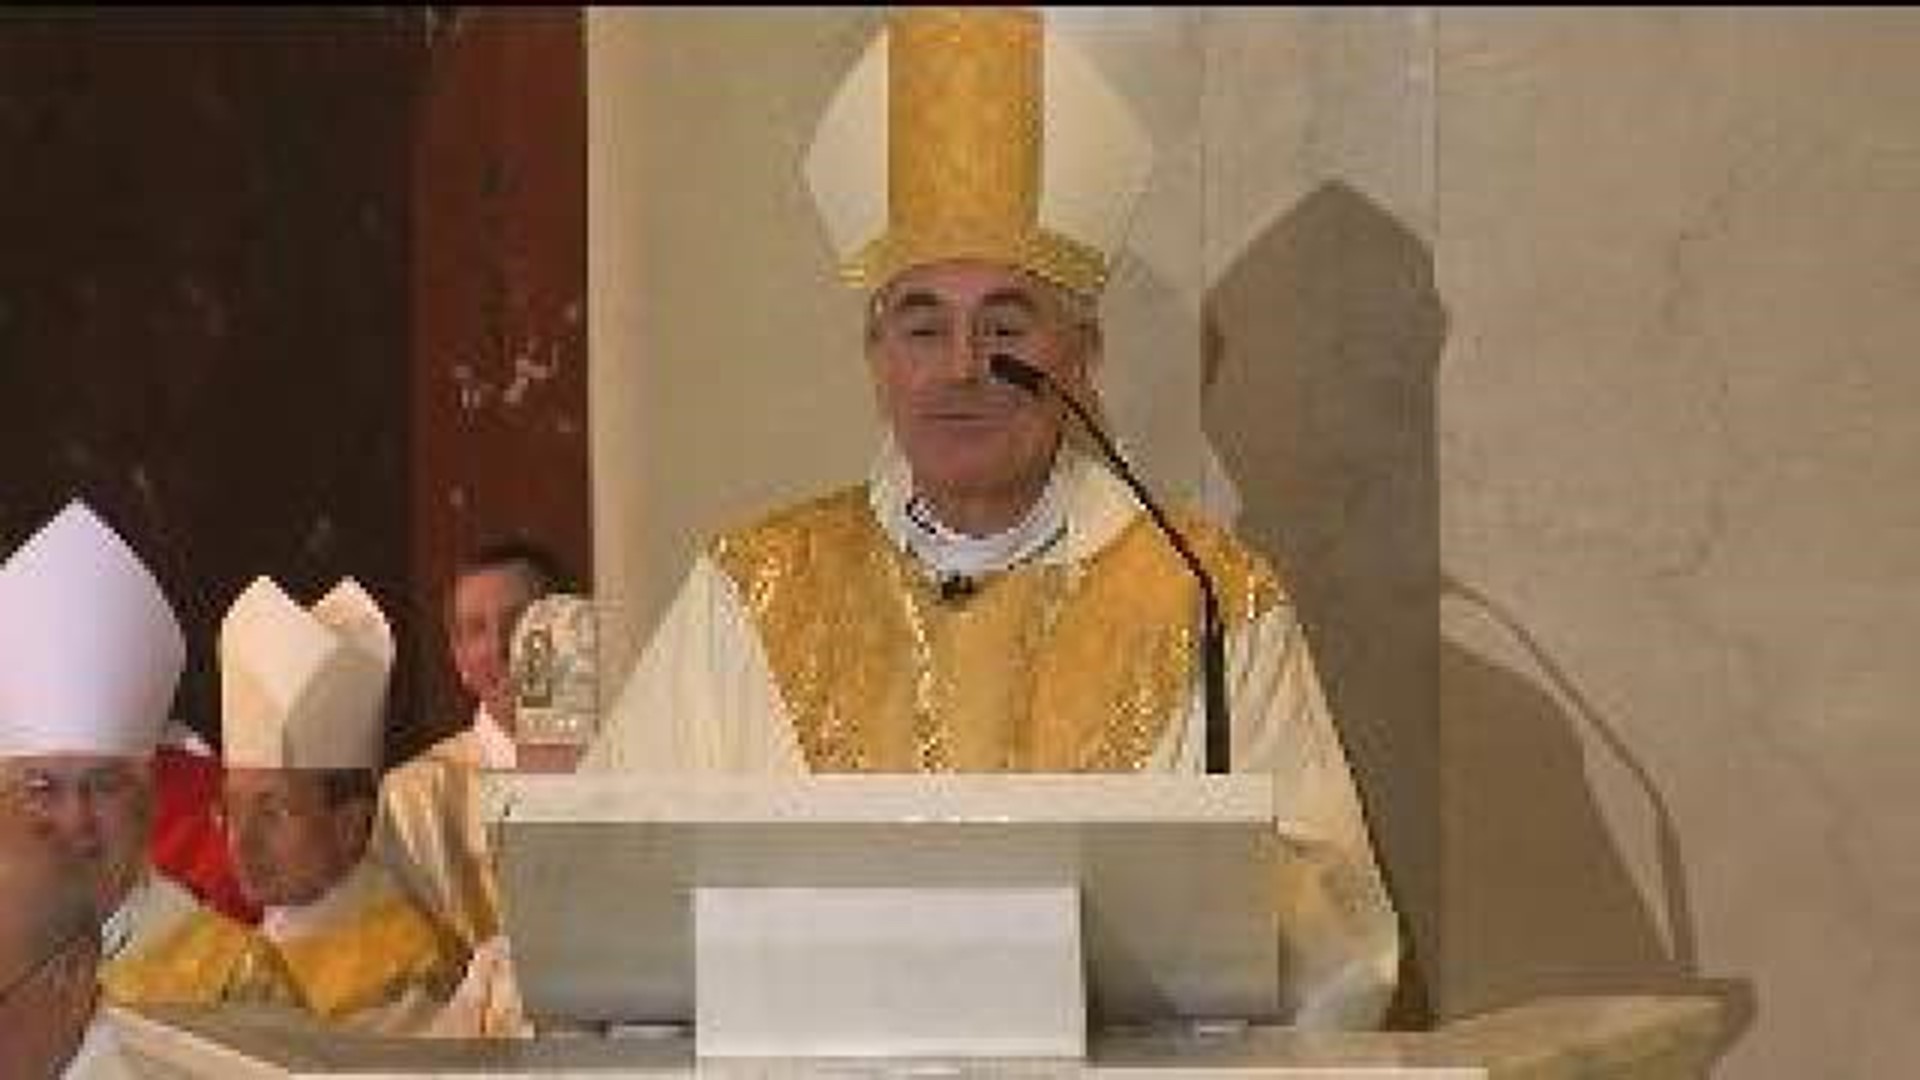 Bishop Gainer Installed As Bishop Of Harrisburg